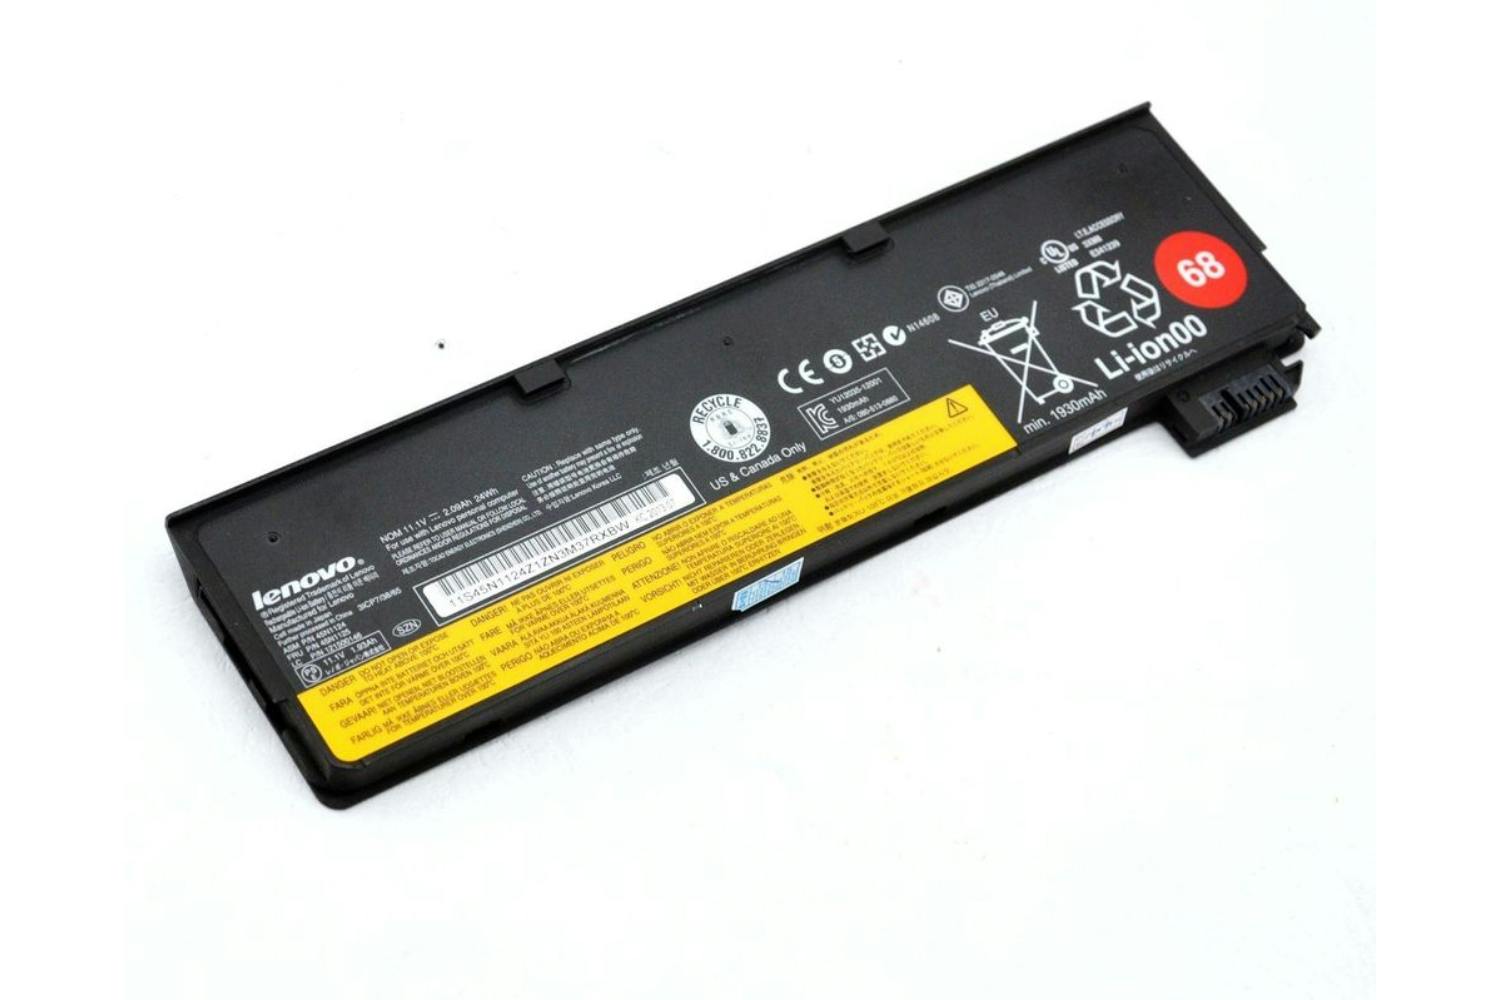 Lenovo ThinkPad Battery 68 11.4V 2060mAh